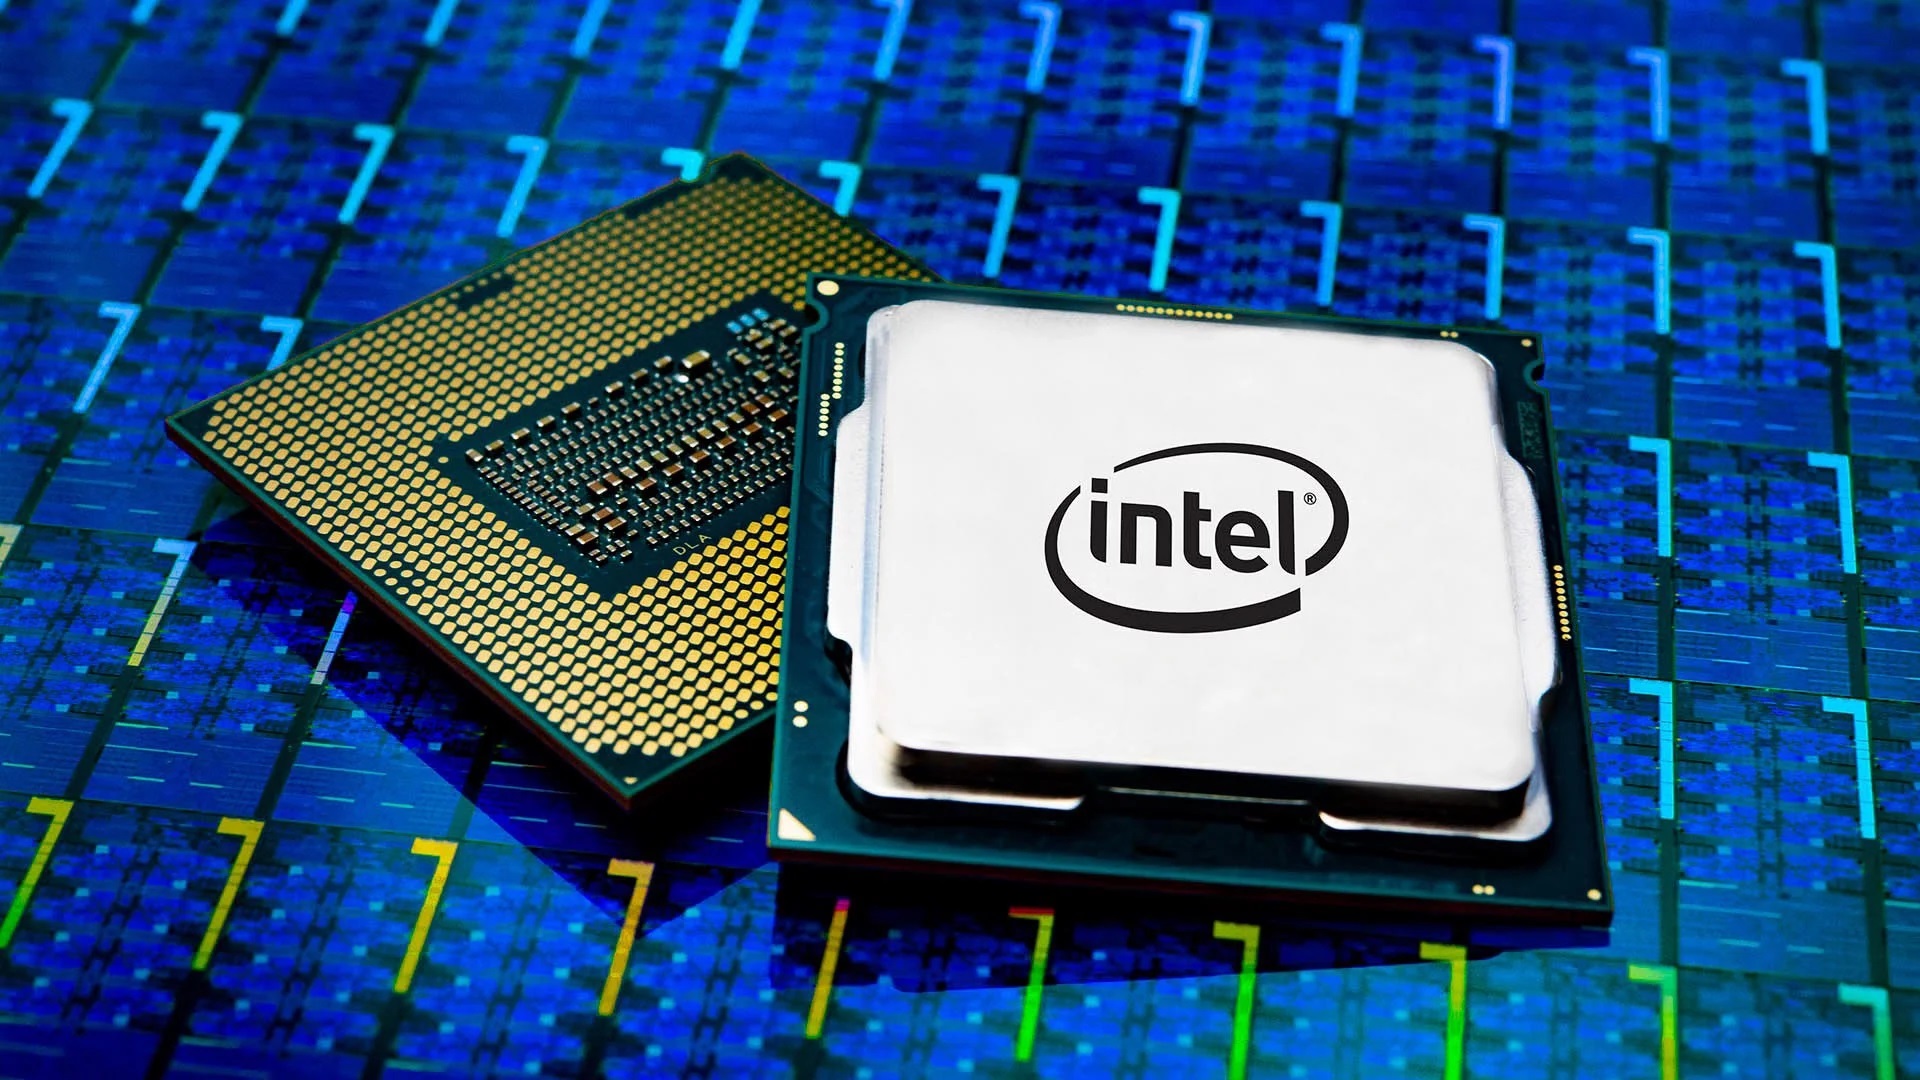 Intel hiện sử dụng khoảng 10.000 nhân viên trên khắp Liên minh Châu Âu.